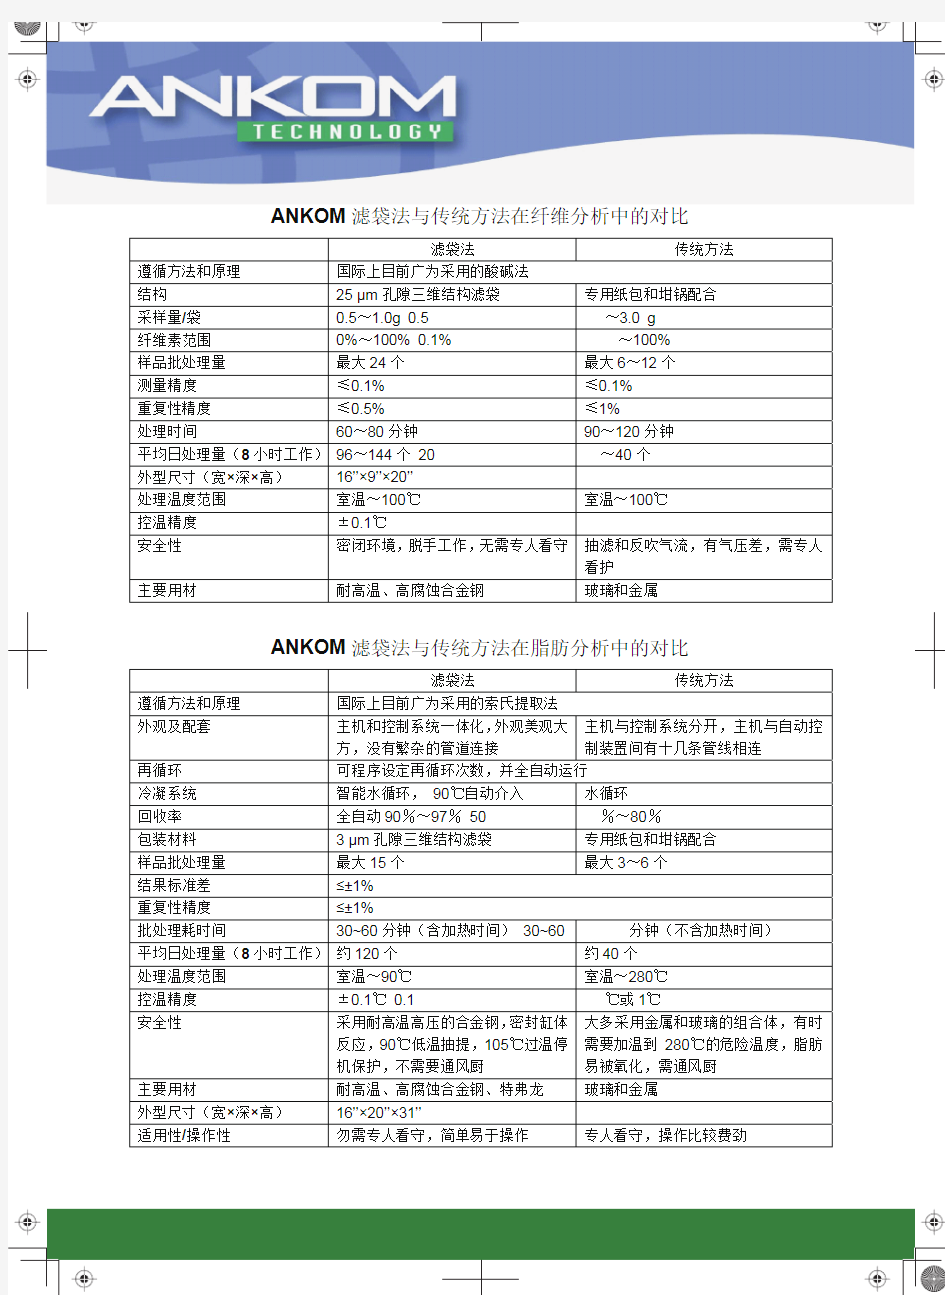 美国ANKOM 产品广东省总代理---广州市帆德科学仪器有限公司